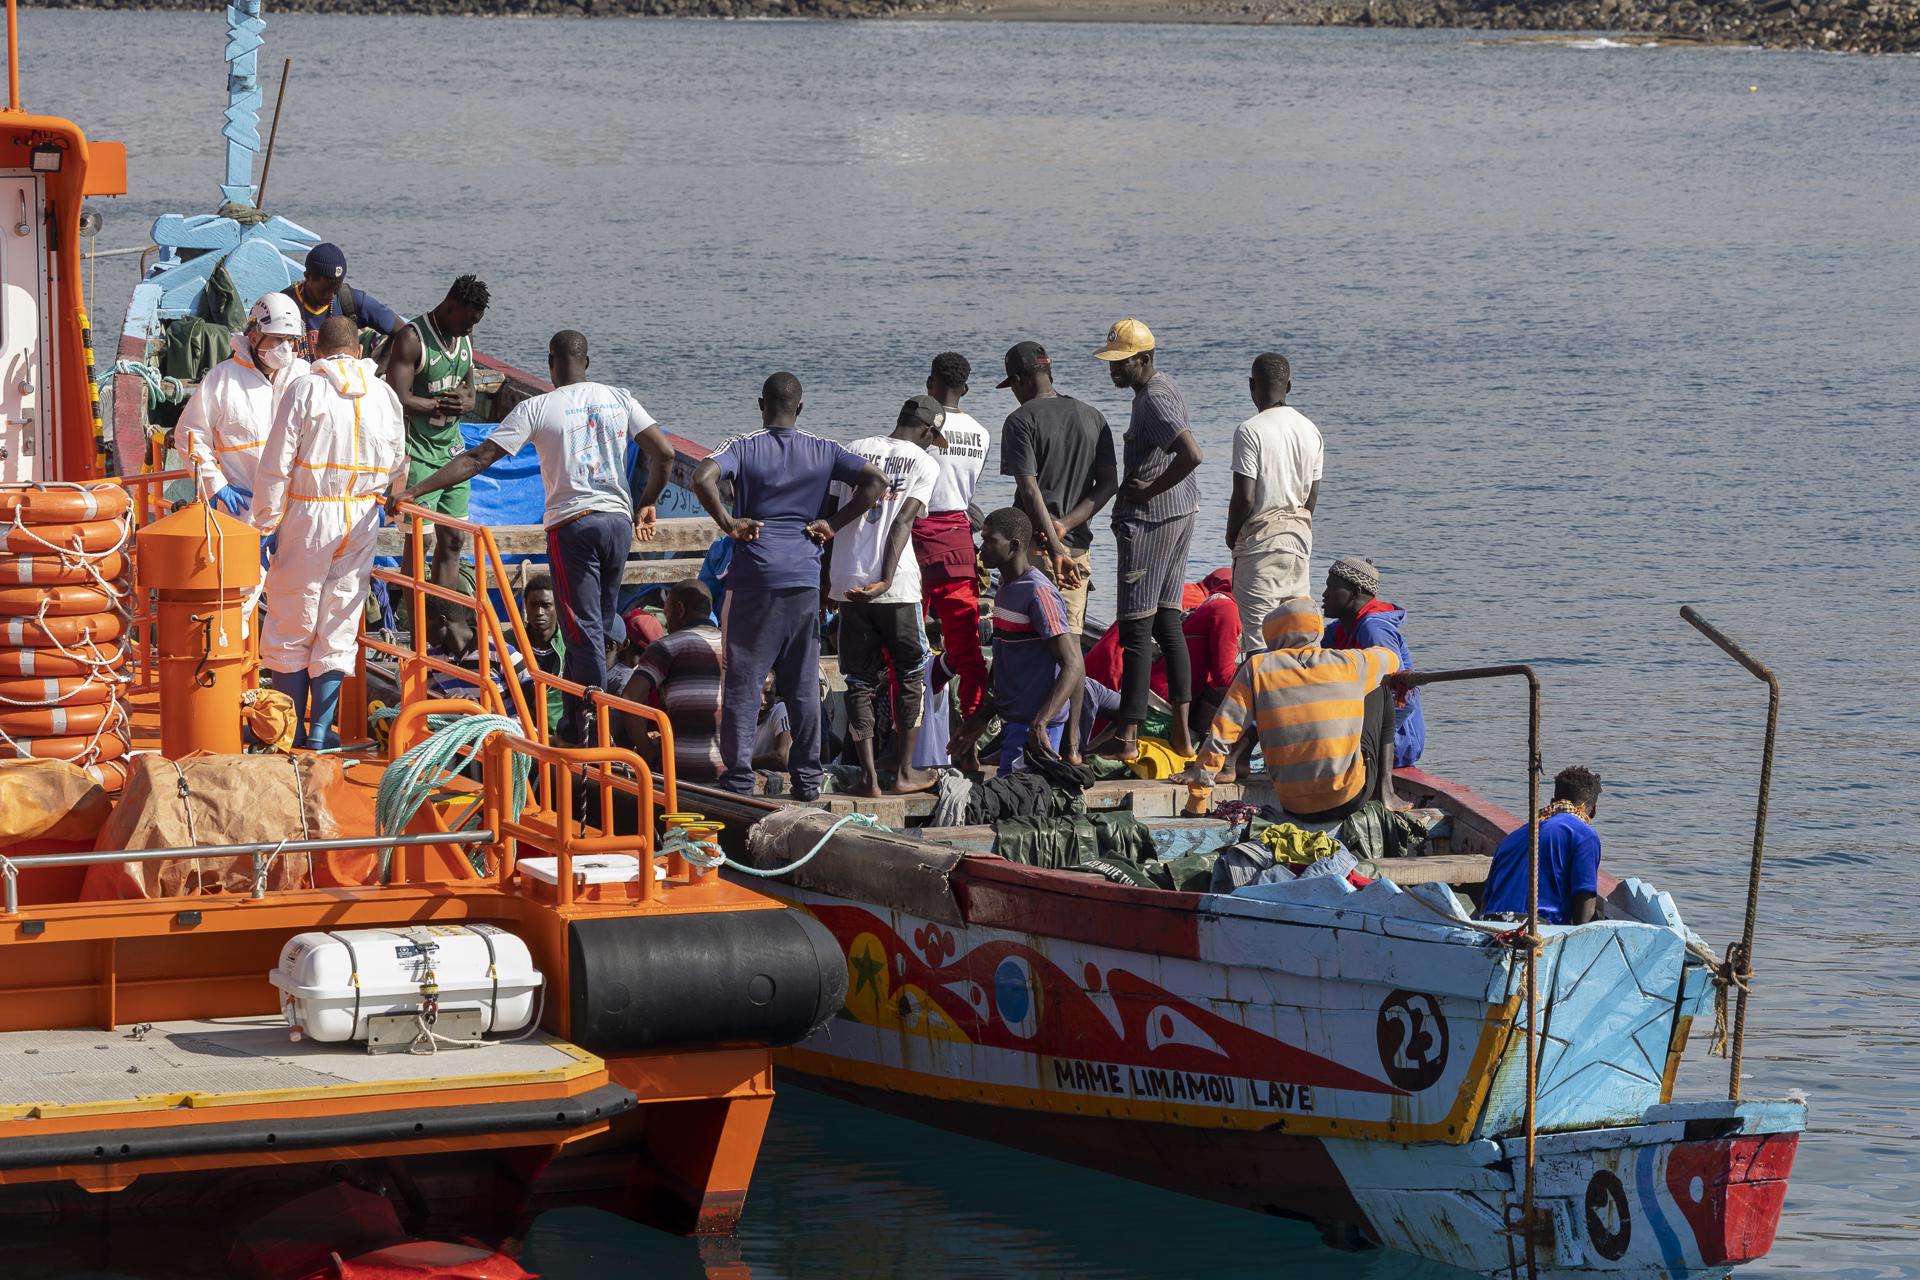 Salvamento Marítimo ha rescatado este lunes a 363 migrantes que viajaban a bordo de tres cayucos en aguas próximas a Canarias, dos de ellos trasladados al muelle de Los Cristianos, en Tenerife, y el tercero al de Arguineguín, en Gran Canaria. Un total de 164 personas de origen subsahariano, cuatro mujeres y hasta once, posibles menores -todos varones-, fueron rescatados durante la mañana en aguas próximas al sur de Gran Canaria y trasladados por un barco de Salvamento Marítimo hasta Arguineguín. En la imagen, llegada de los inmigrantes en cayuco al muelle de Arguineguín. EFE/ Quique Curbelo